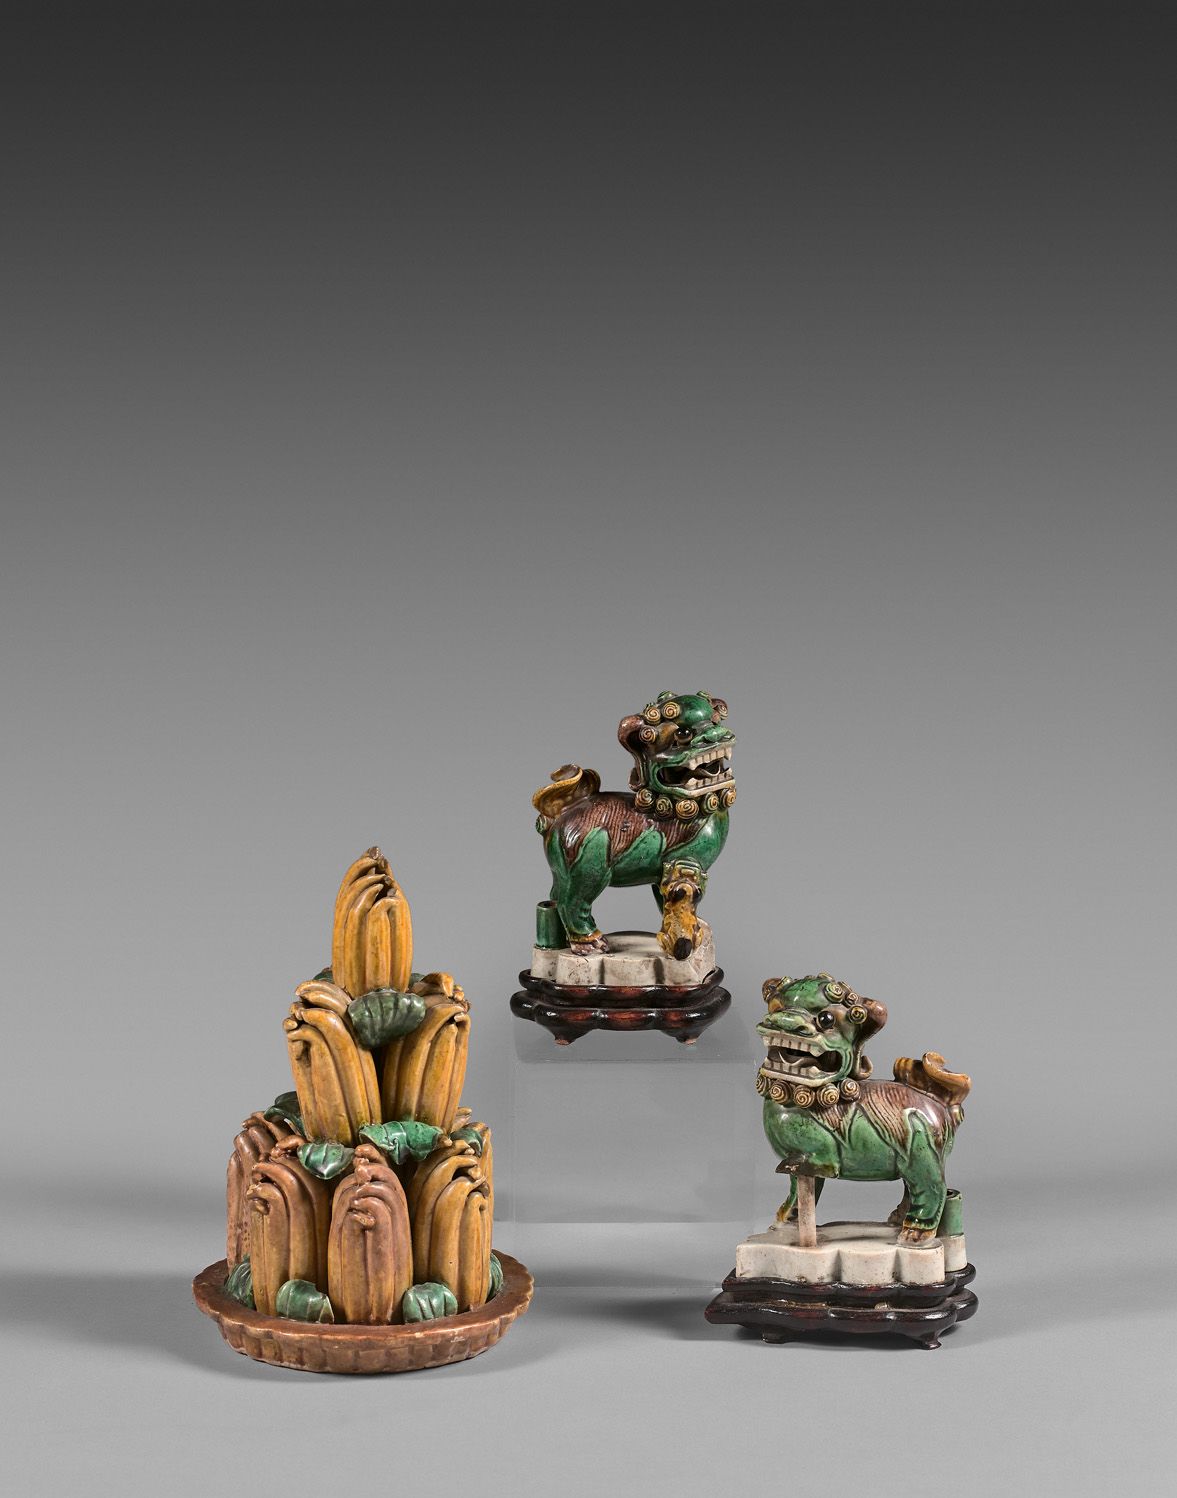 Null 中国，19世纪

拍品包括一对三彩珐琅彩饼香，形状为嵌合体，以及被称为 "佛手 "的消化柠檬金字塔。

高度为10和17厘米

小碎片和薄片。